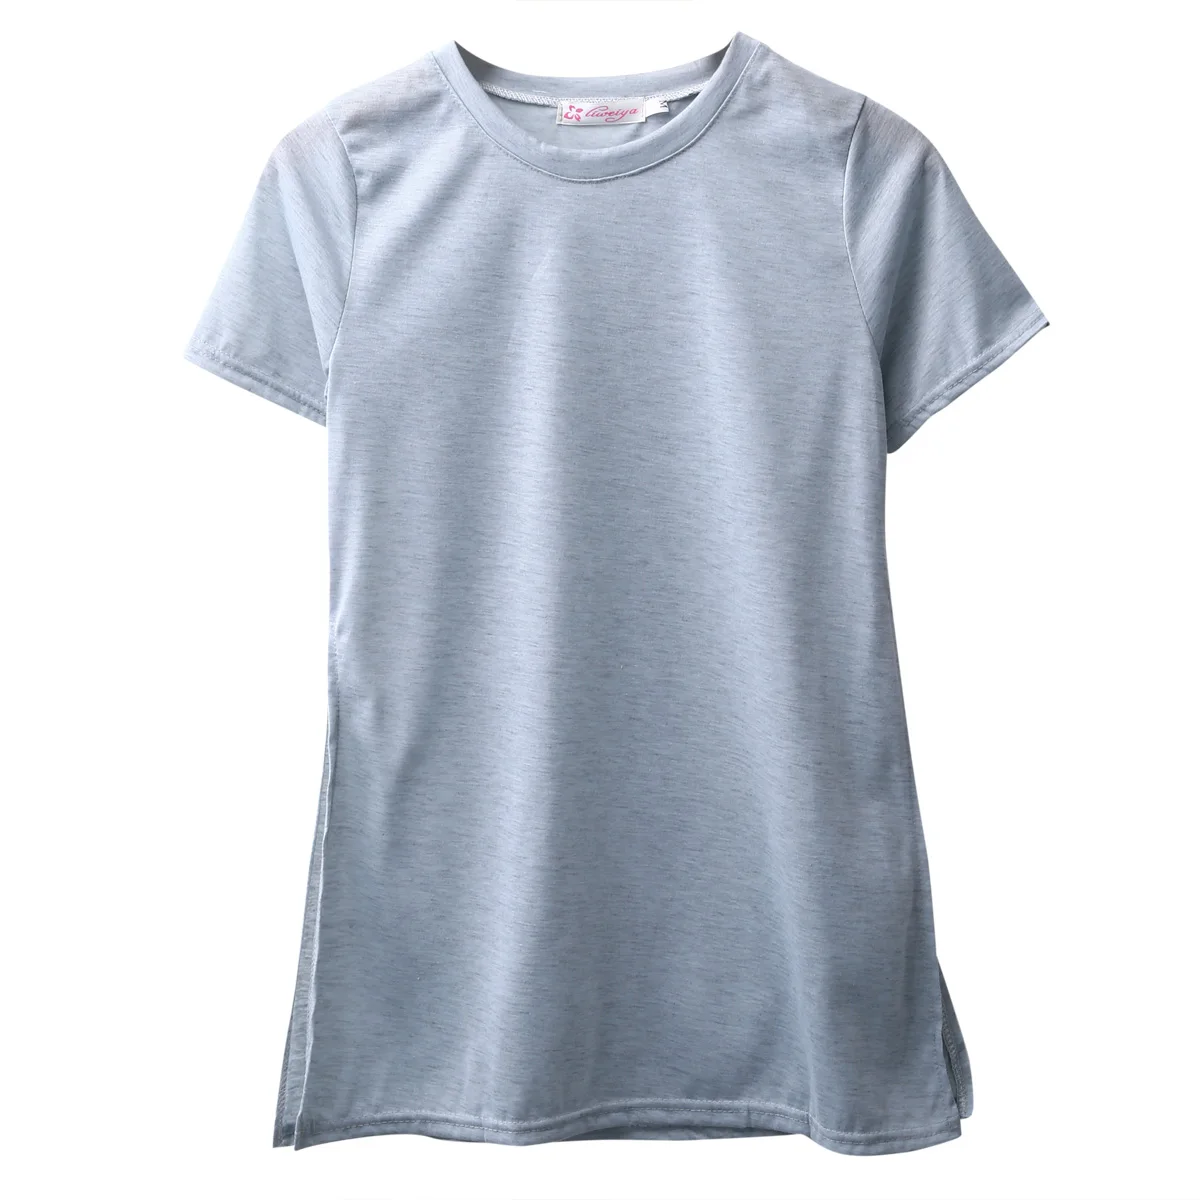 Harajuku летняя Свободная Повседневная футболка для женщин, женские топы с коротким рукавом, футболки, футболка с открытой стороной Tumblr - Цвет: Серый